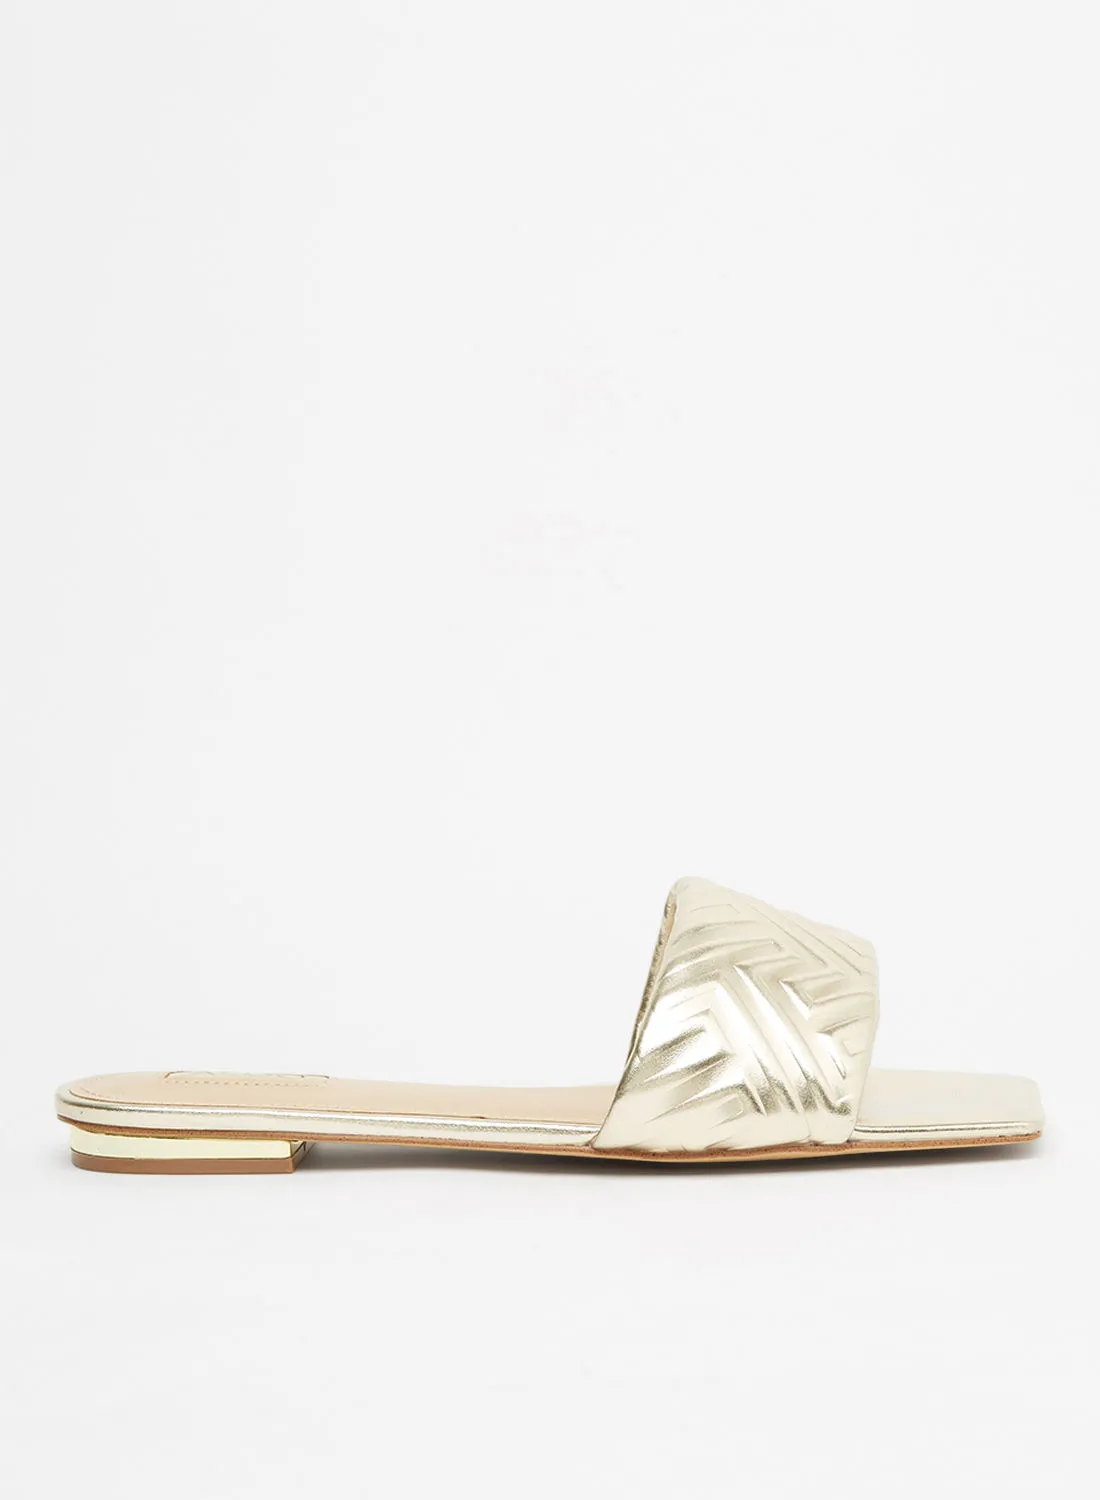 ALDO Cleona Metallic Flat Sandals